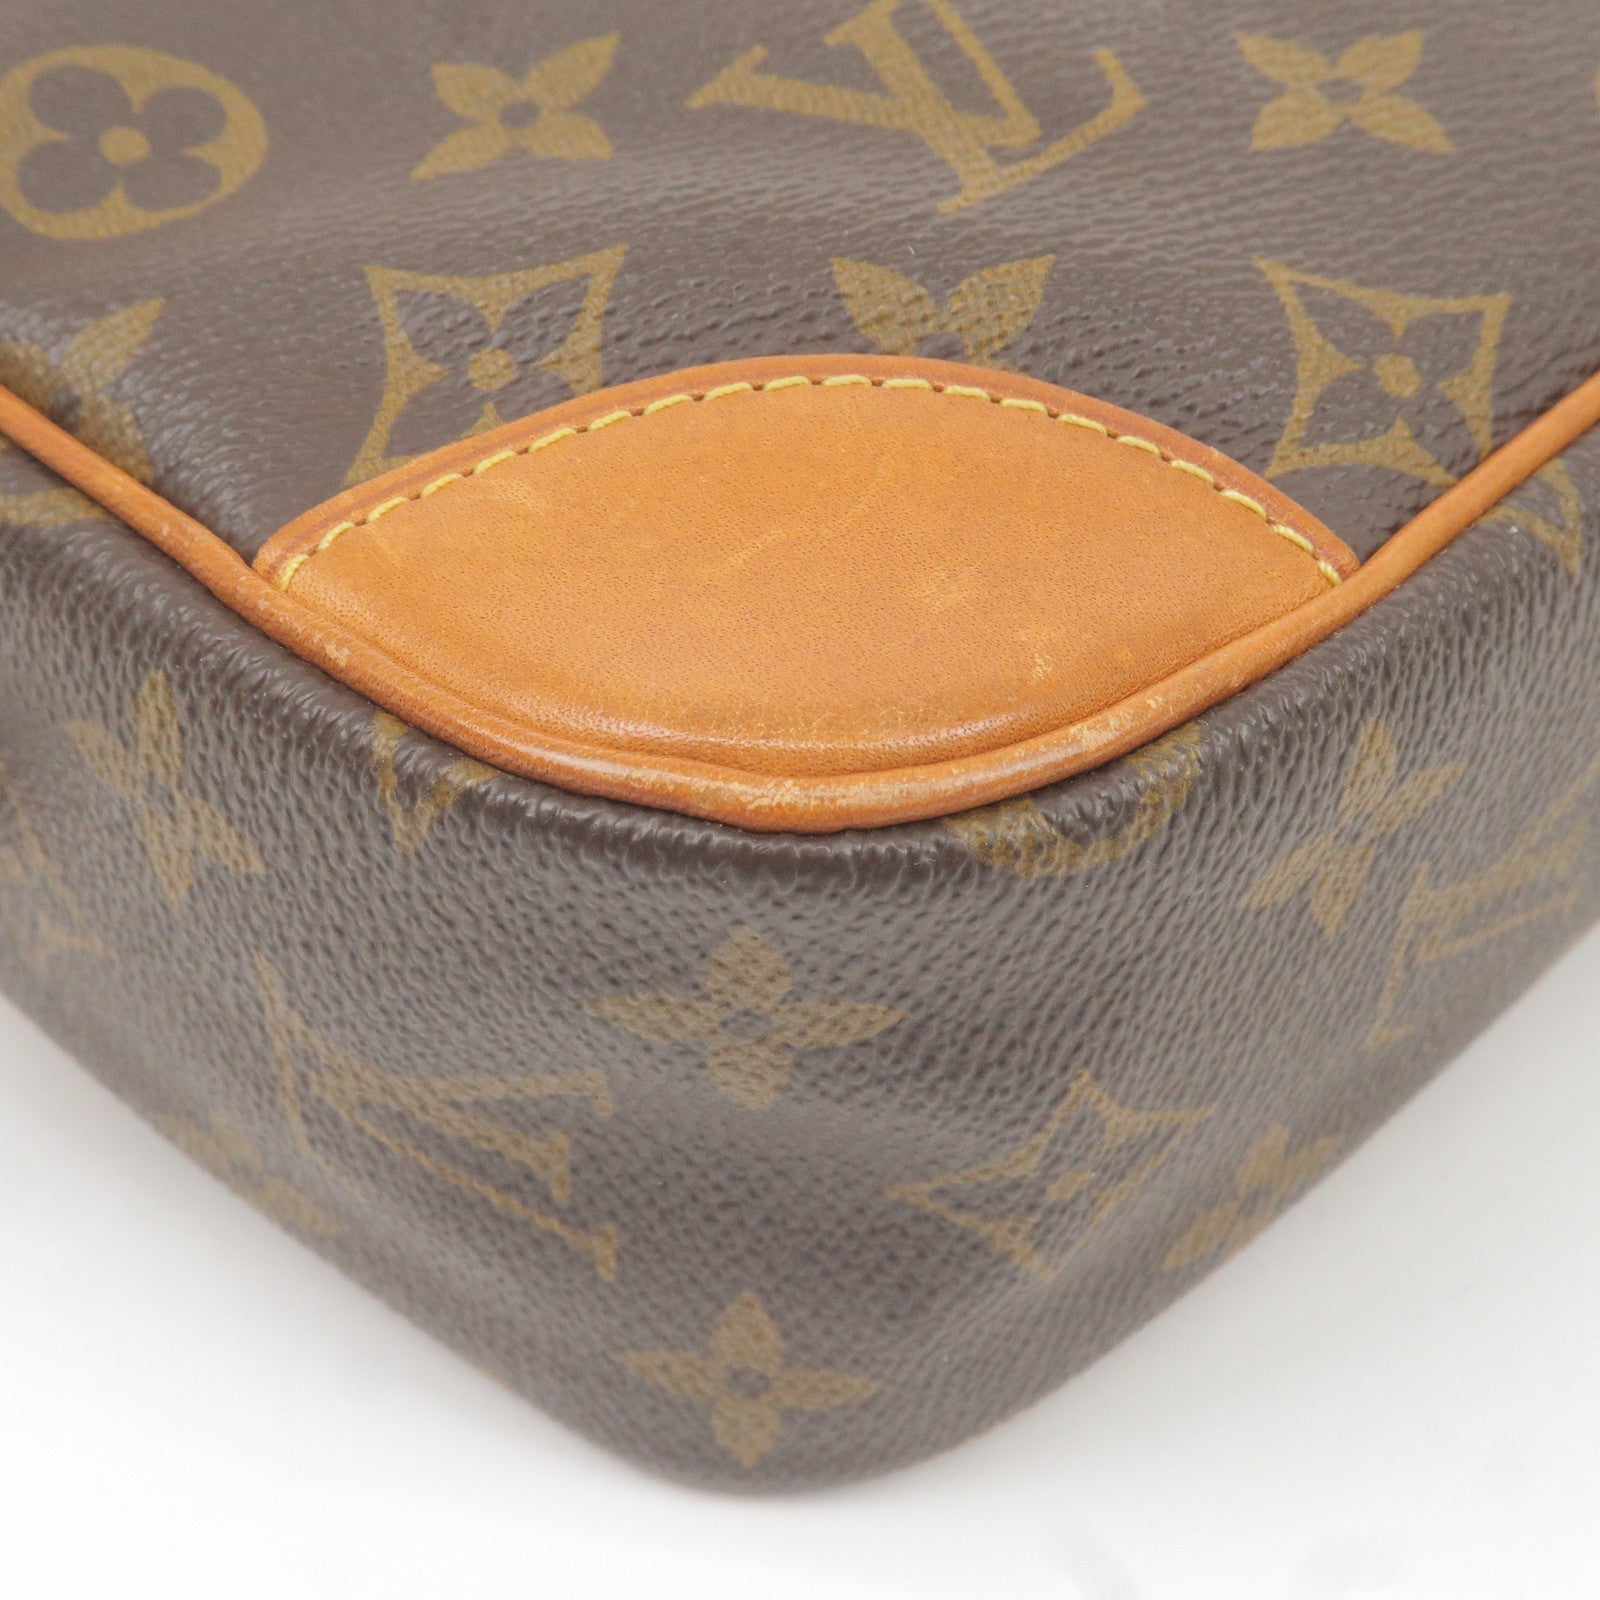 Louis Vuitton, Bags, Louis Vuitton Monogram Compiegne 28 Clutch Hand Bag